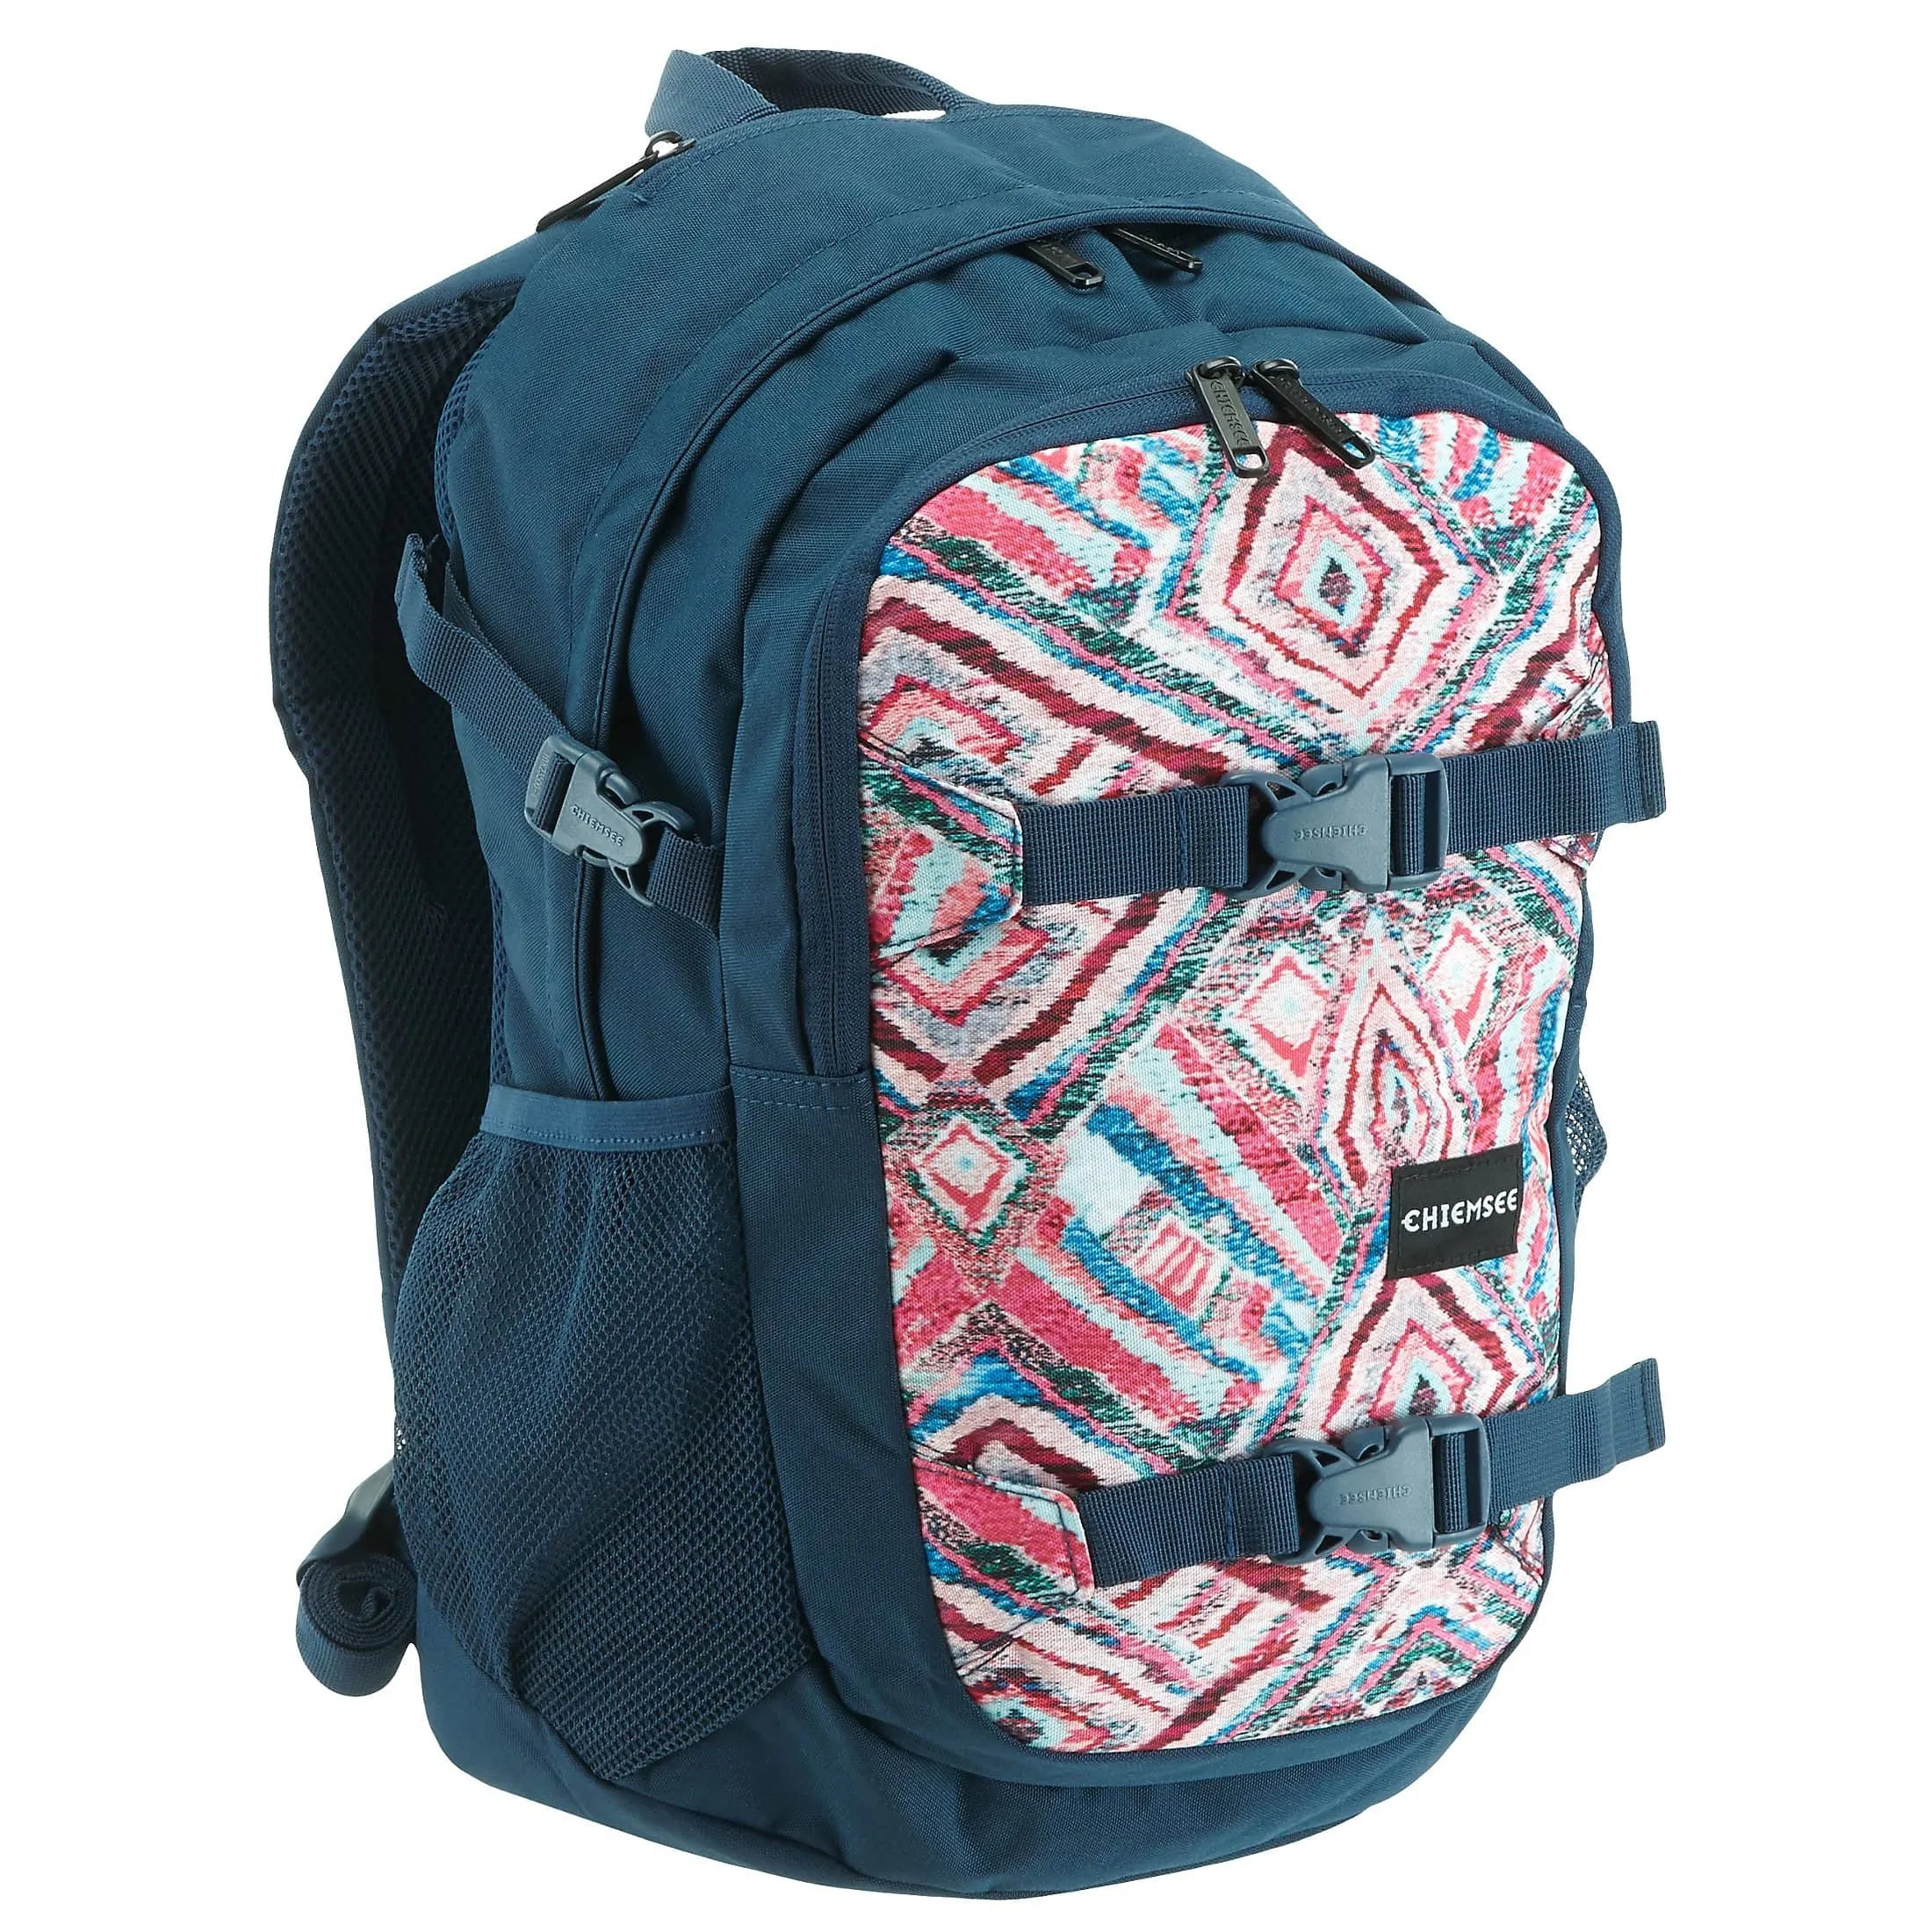 Chiemsee Sports & Travel Bags School Backpack 48 cm - ocean